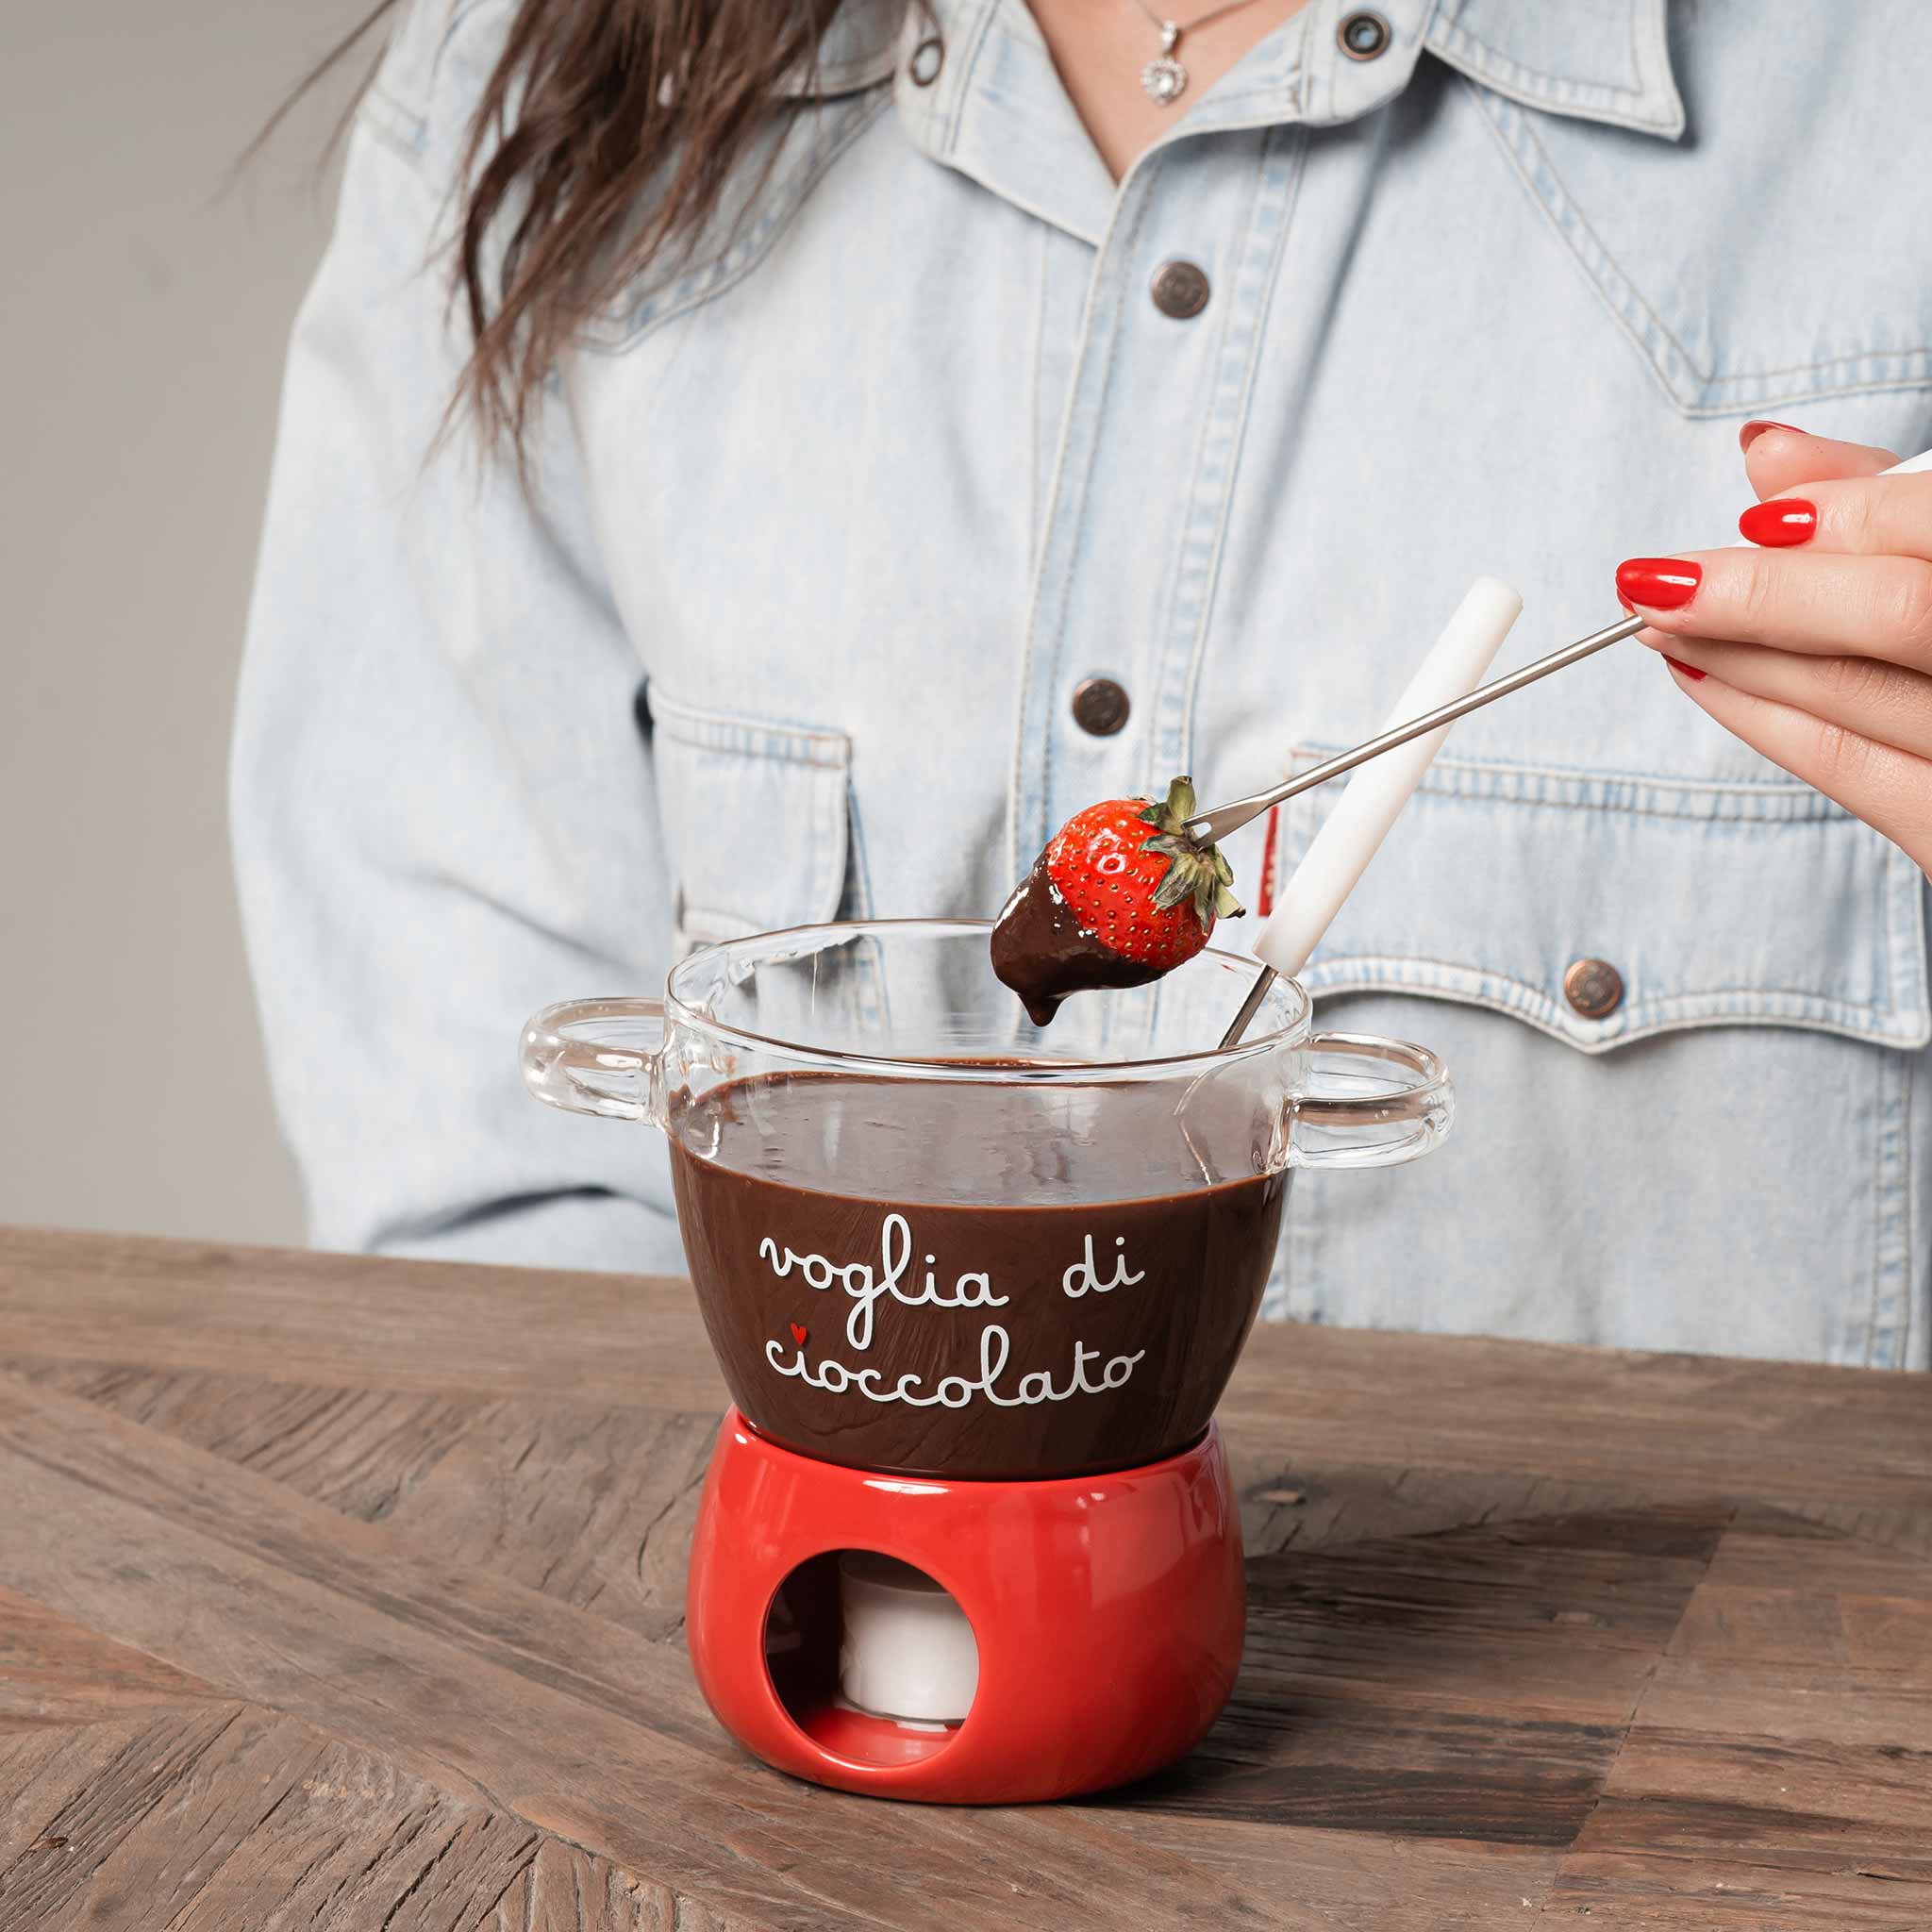 Cómo hacer una fondue de chocolate irresistible fácilmente